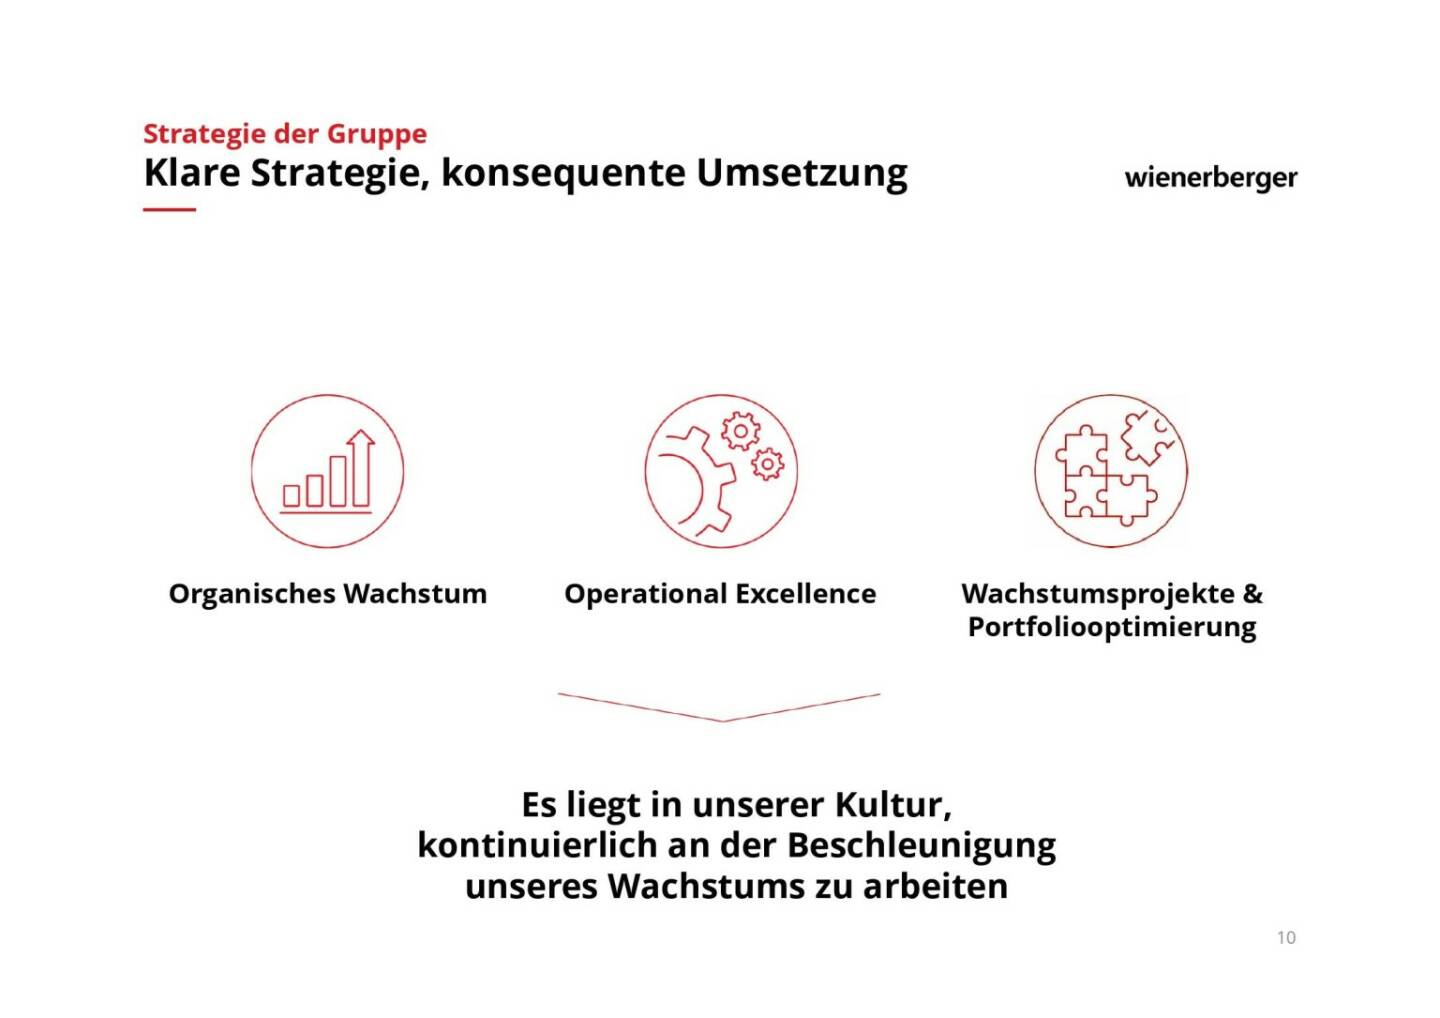 Wienerberger - Klare Strategie, konsequente Umsetzung